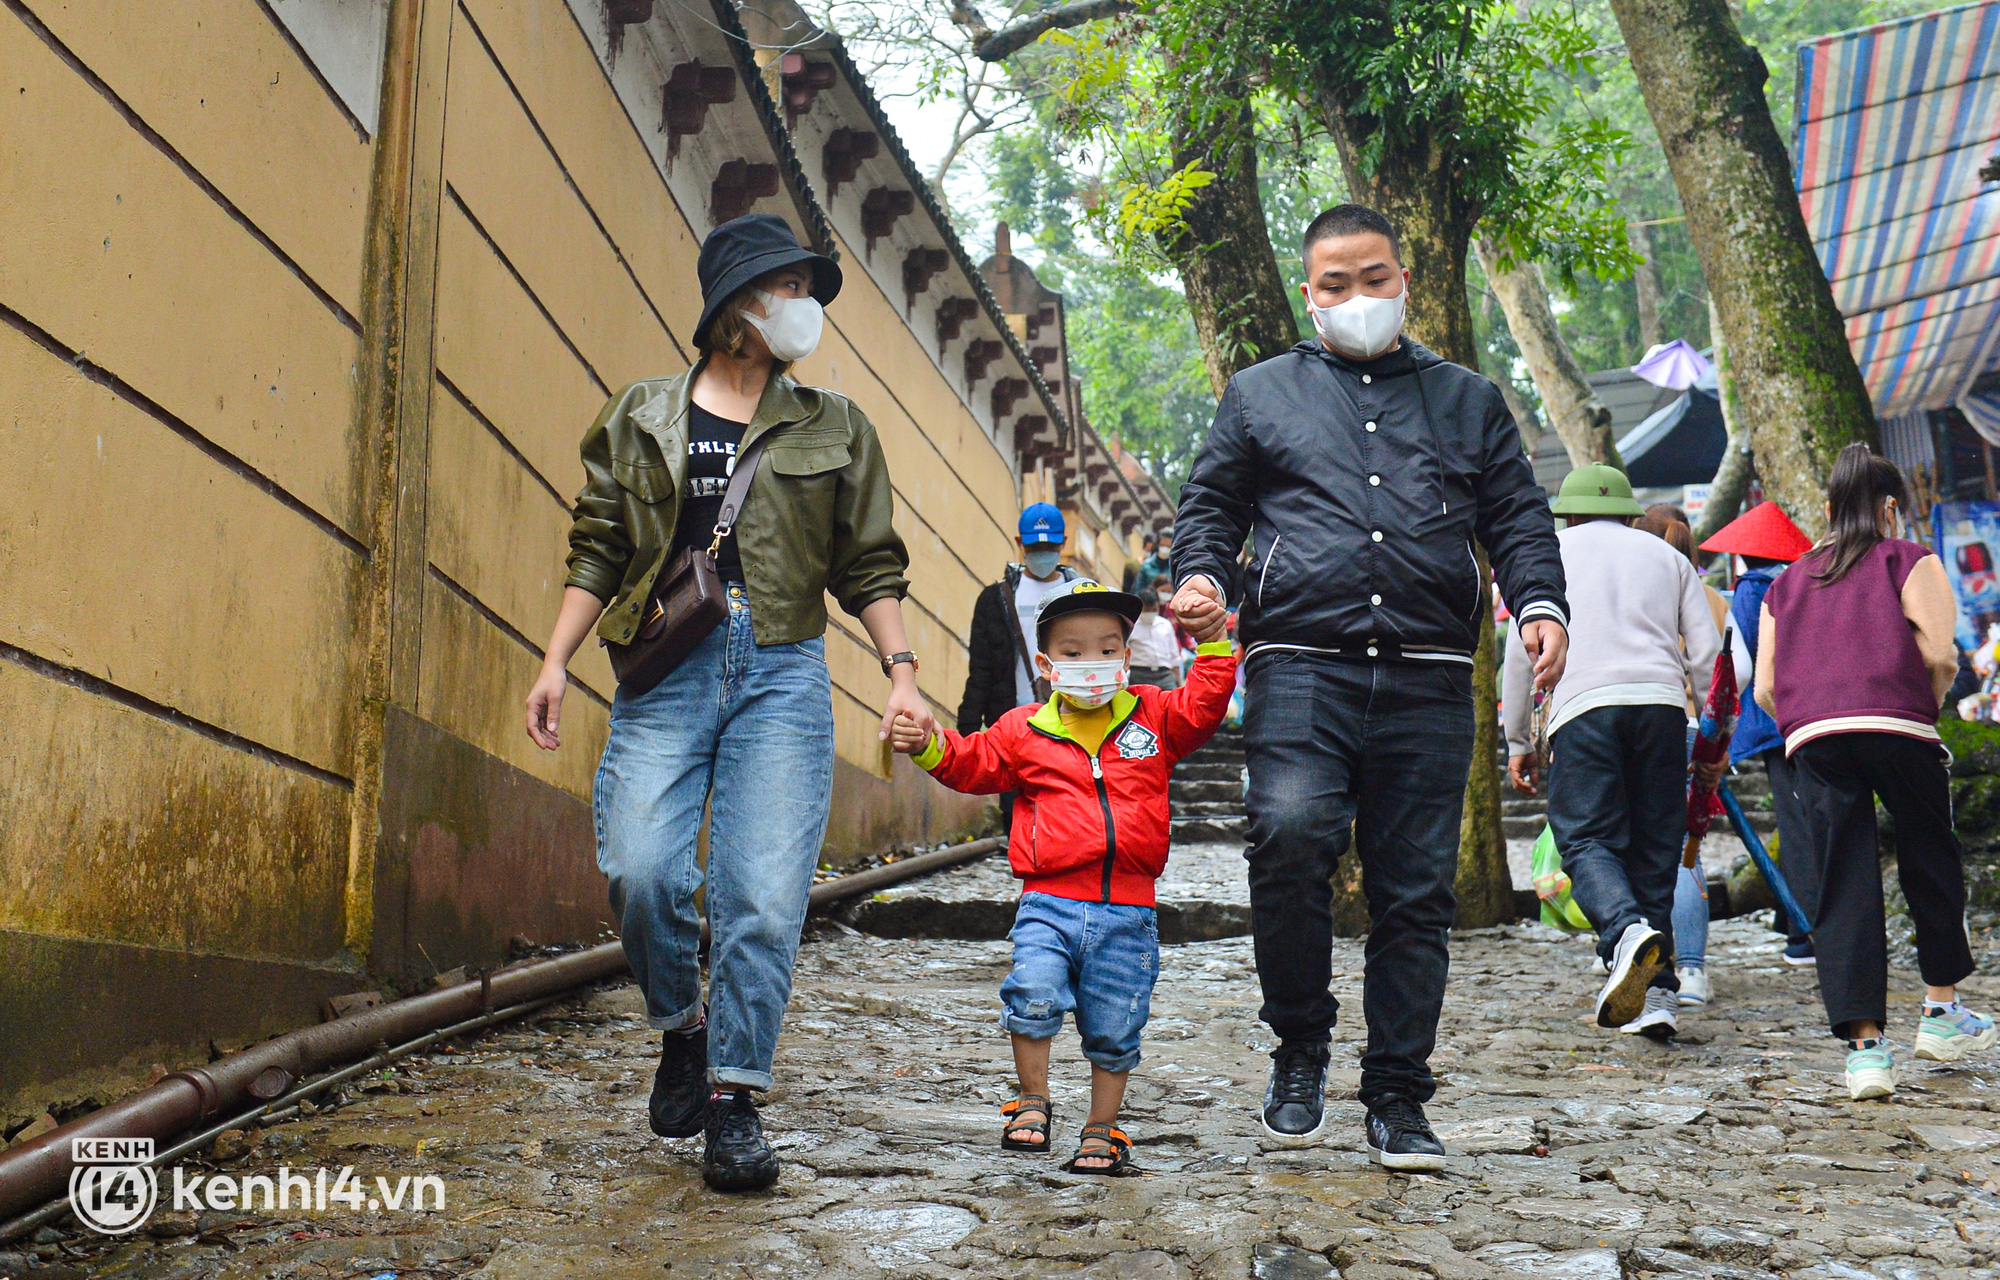 Ảnh: Người dân mặc áo mưa co rúm trên thuyền, trẻ em mệt mỏi theo cha mẹ đi lễ chùa Hương trong giá rét - Ảnh 10.